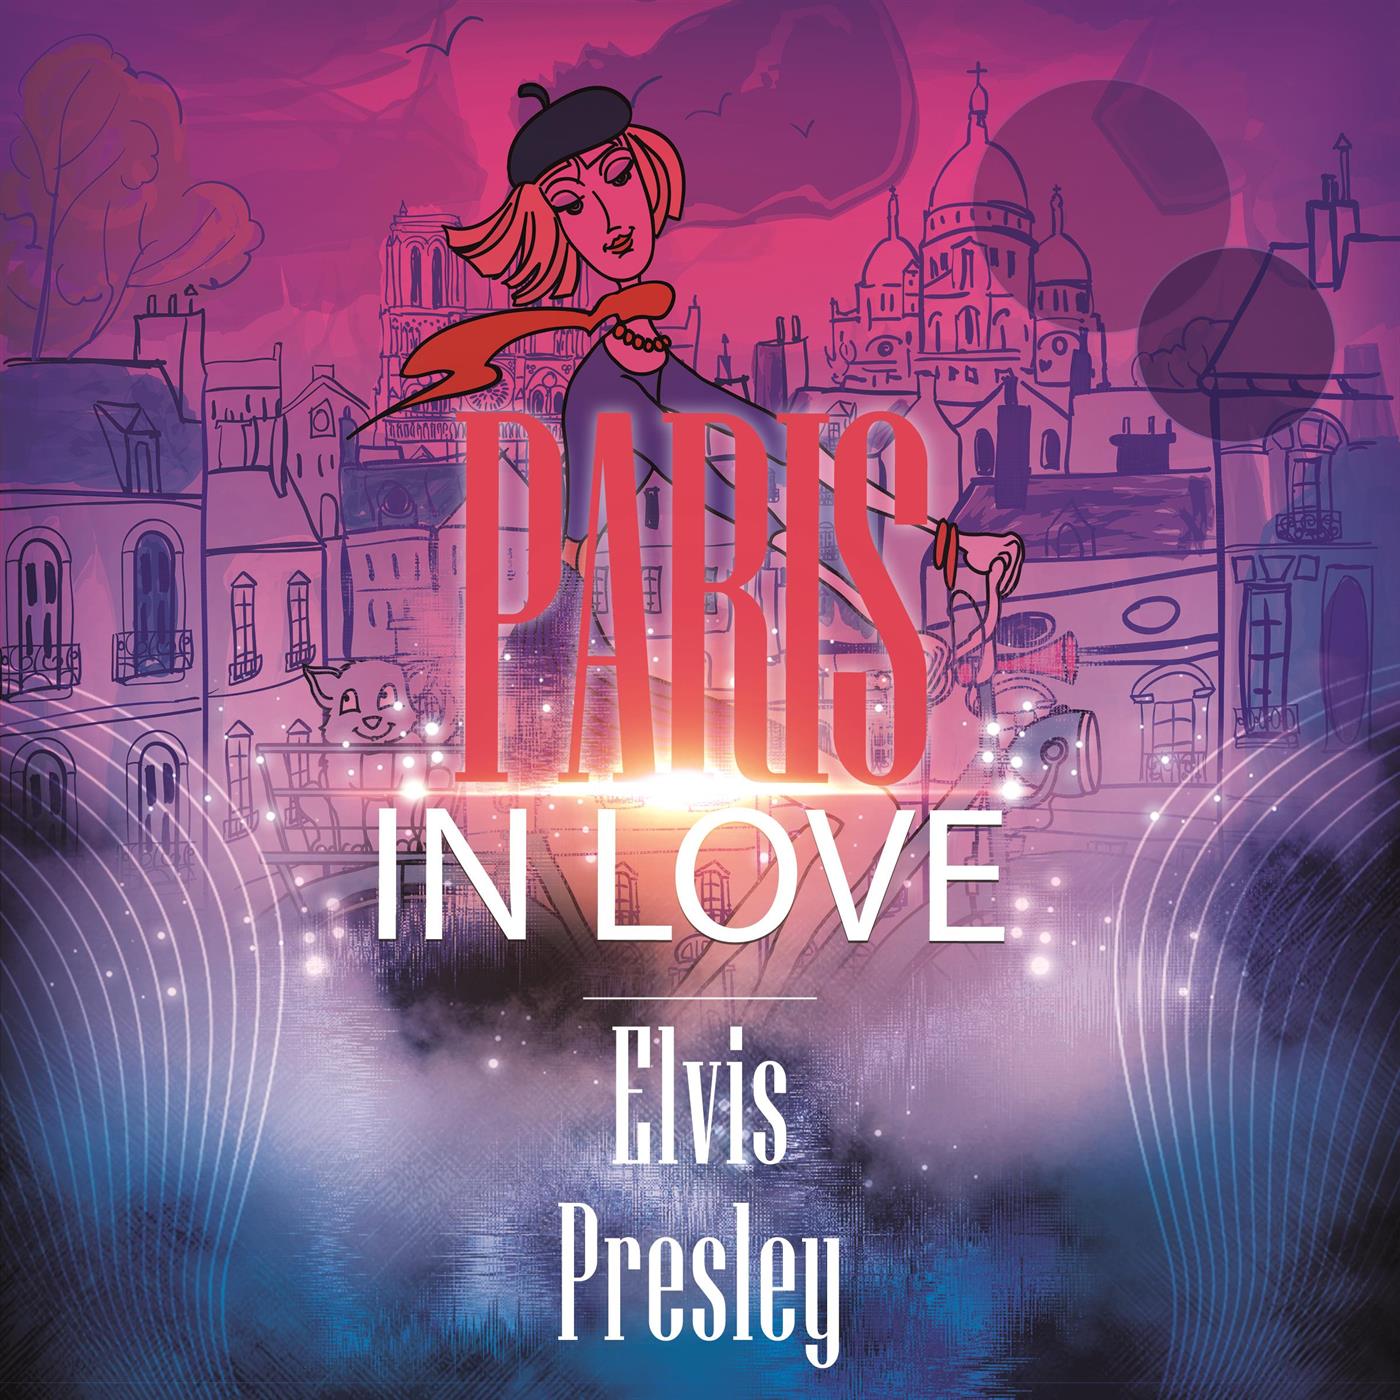 Paris In Love